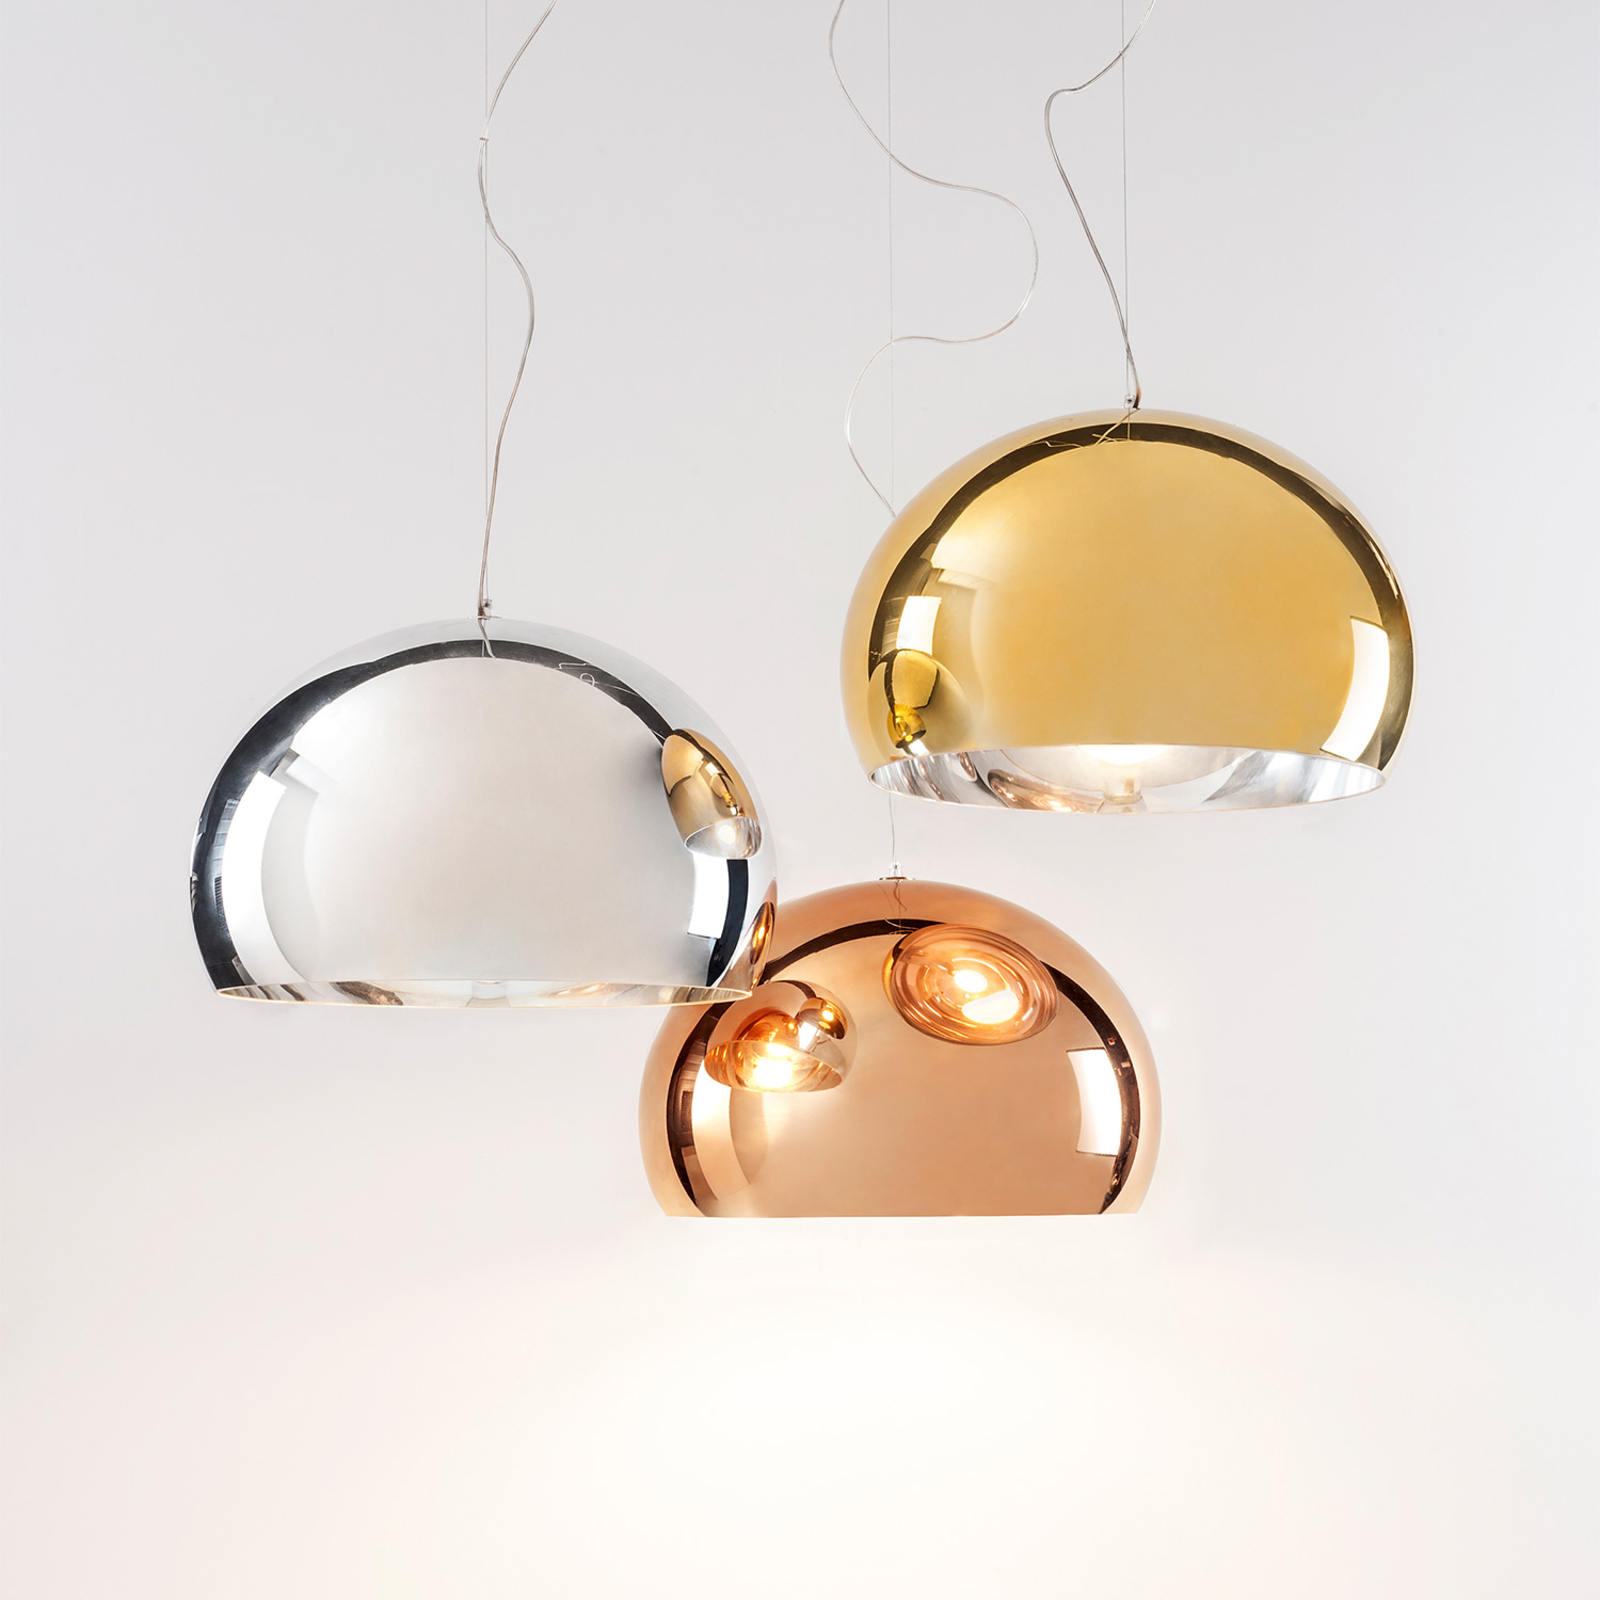 Kartell FL/Y - LED pendant light, glossy gold